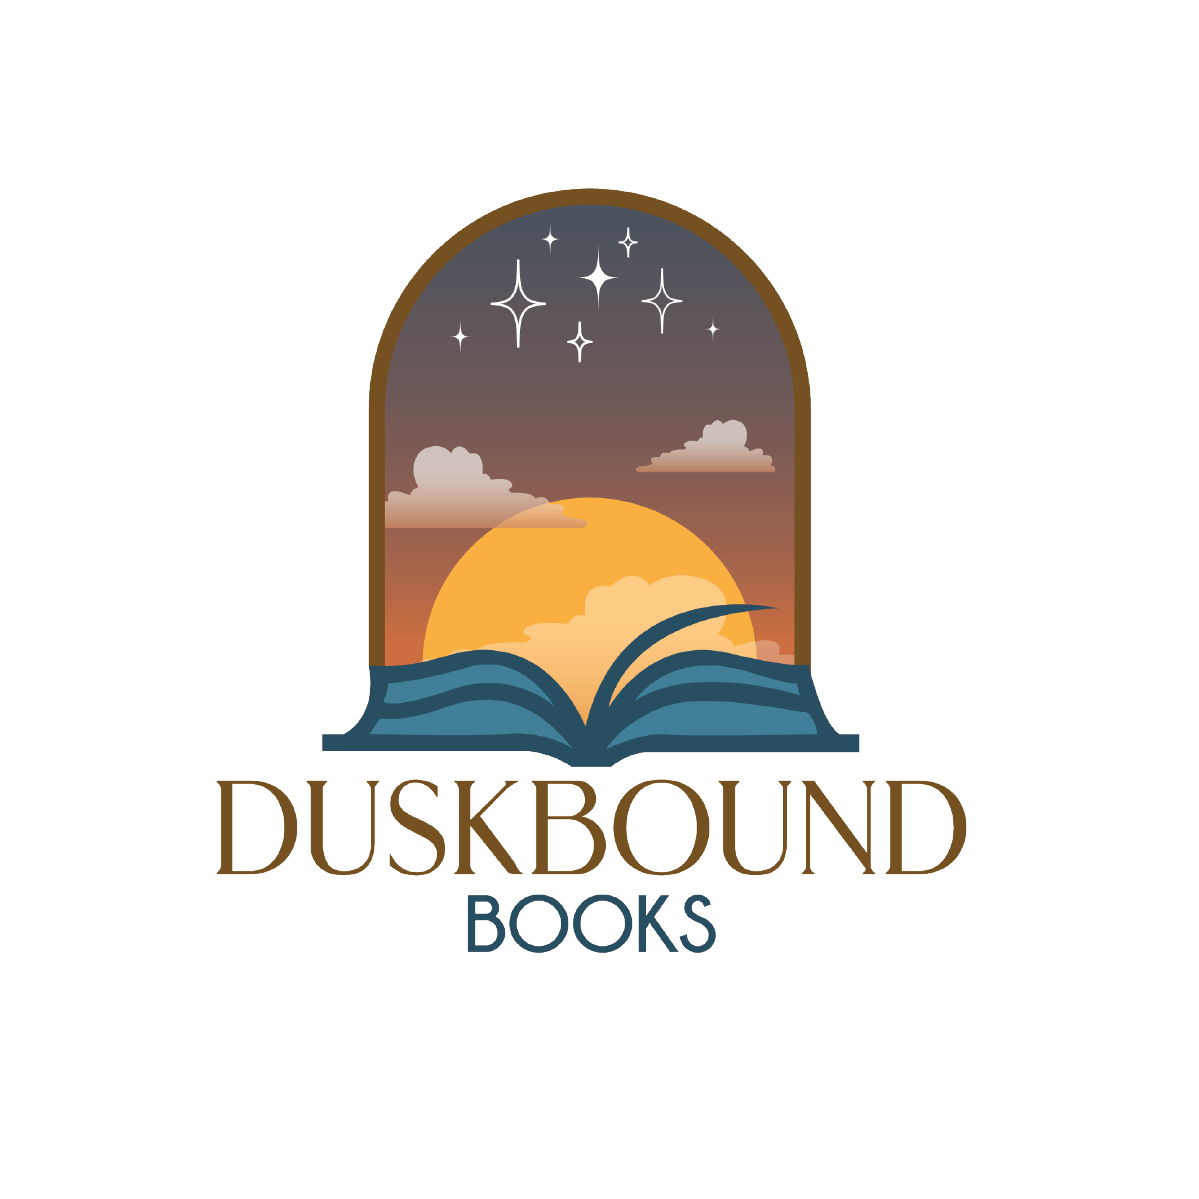 Duskbound Books